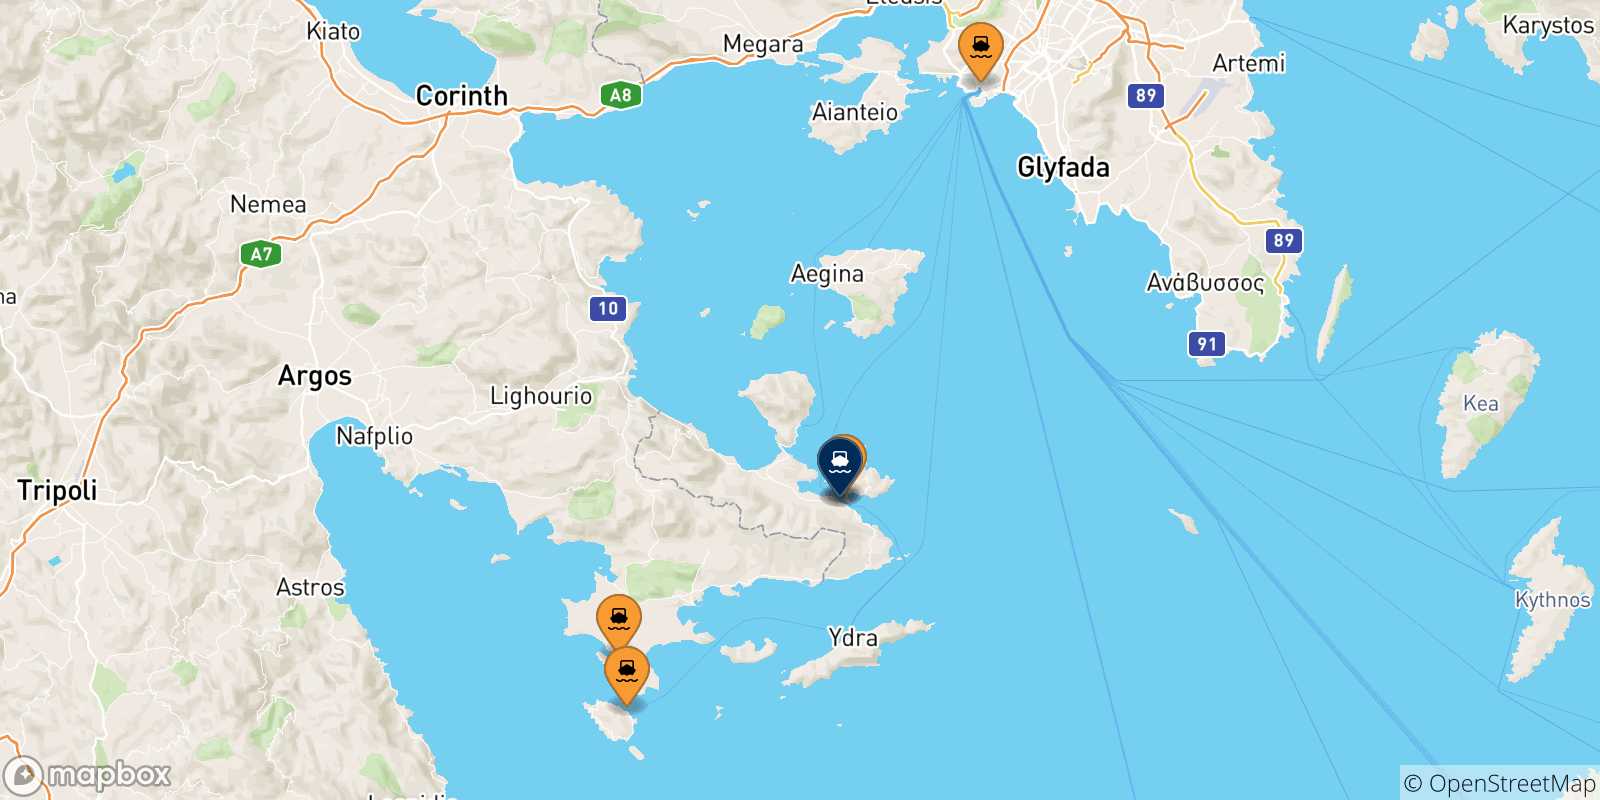 Mappa delle possibili rotte tra la Grecia e Hermioni